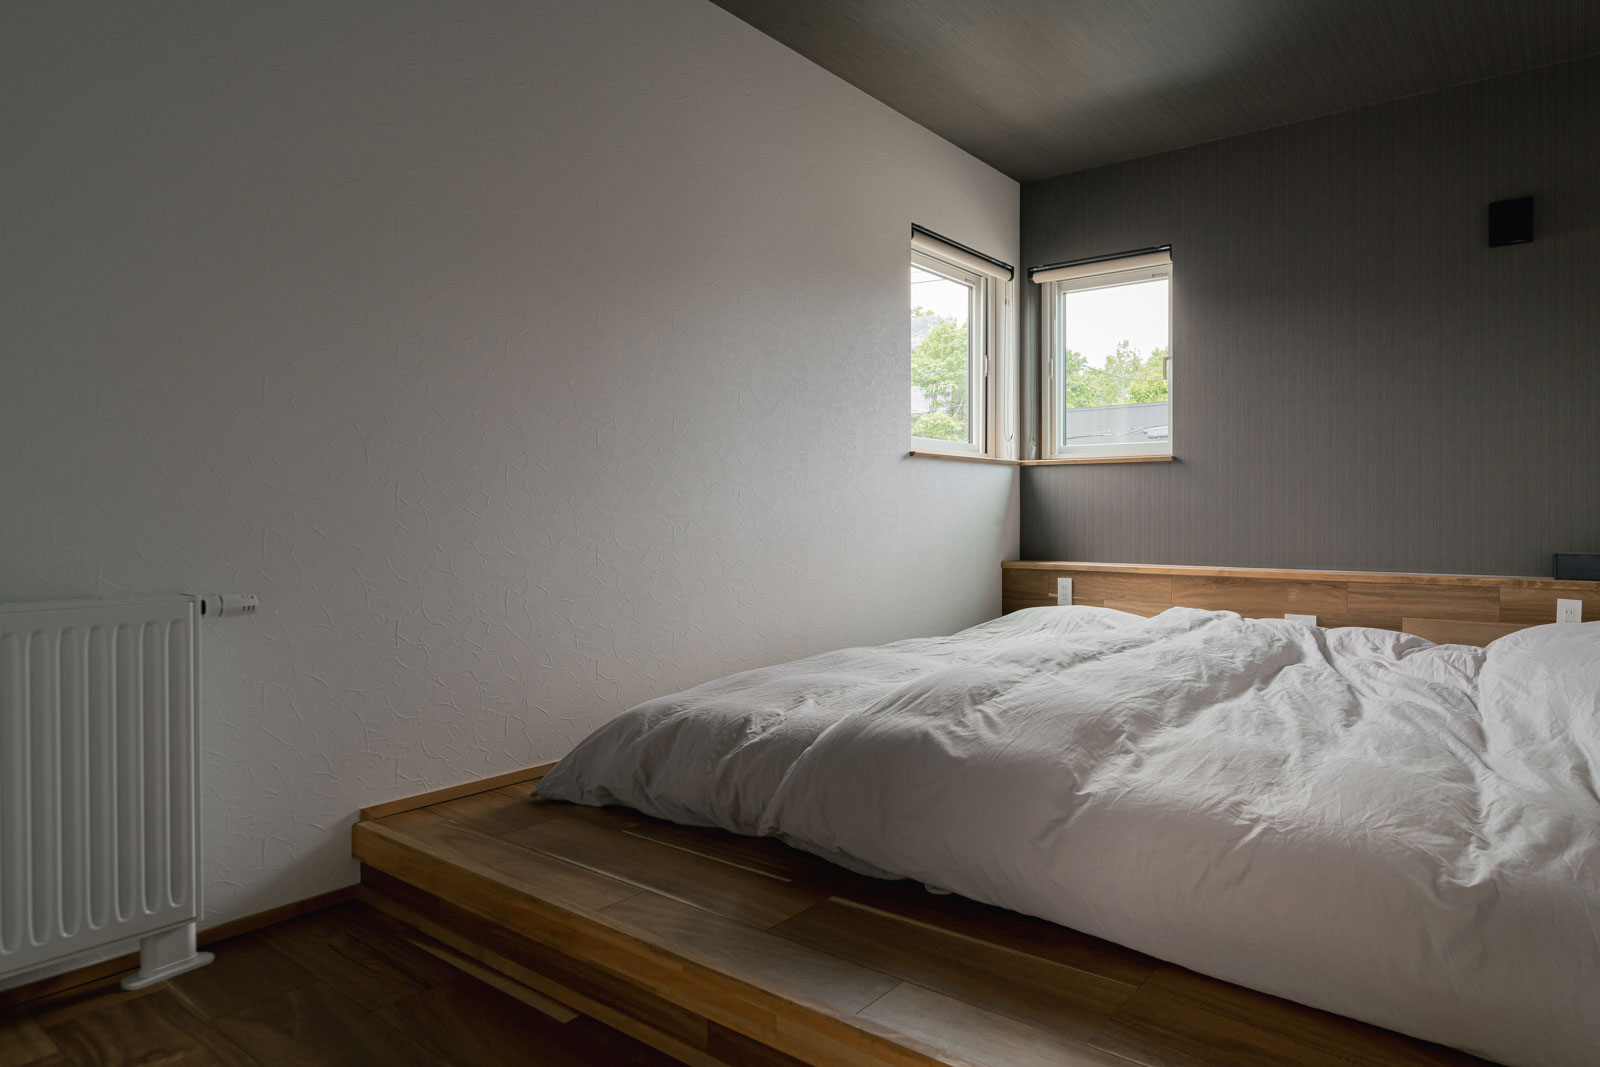 寝室のサイズにピッタリと合わせた小上がりにもなる造作のベッド